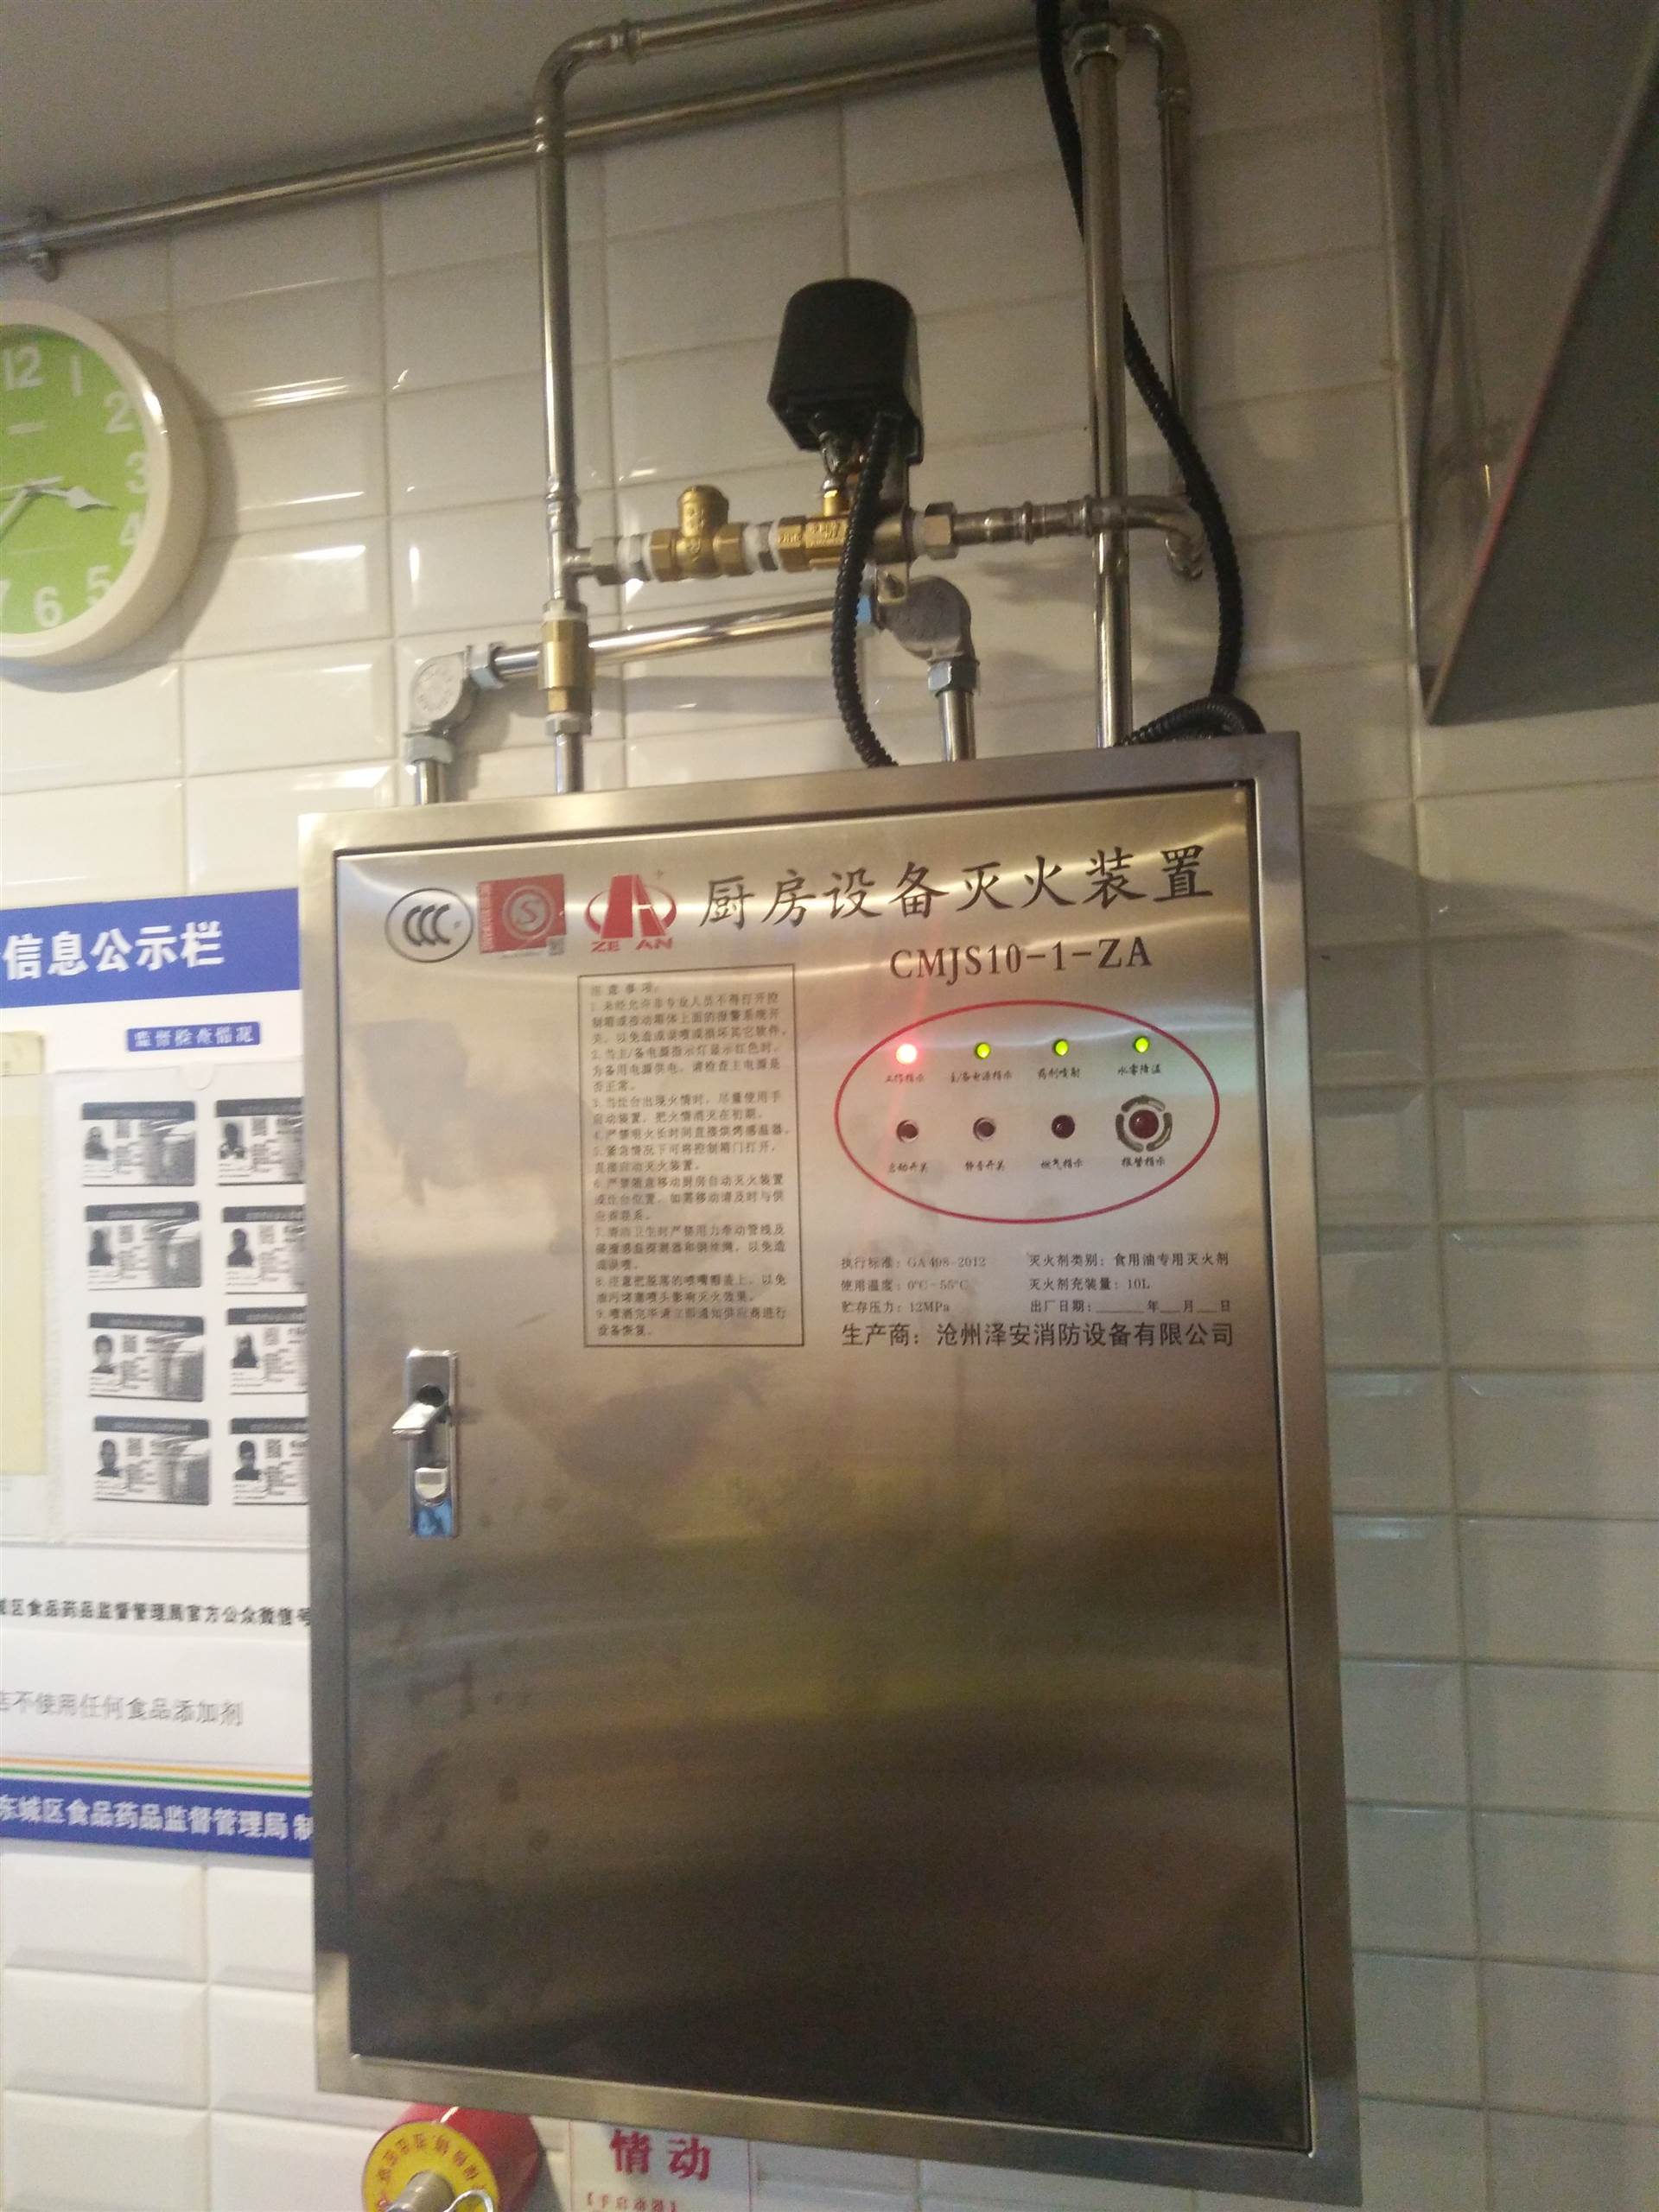 北京北京展览馆商场厨房自动灭火装置